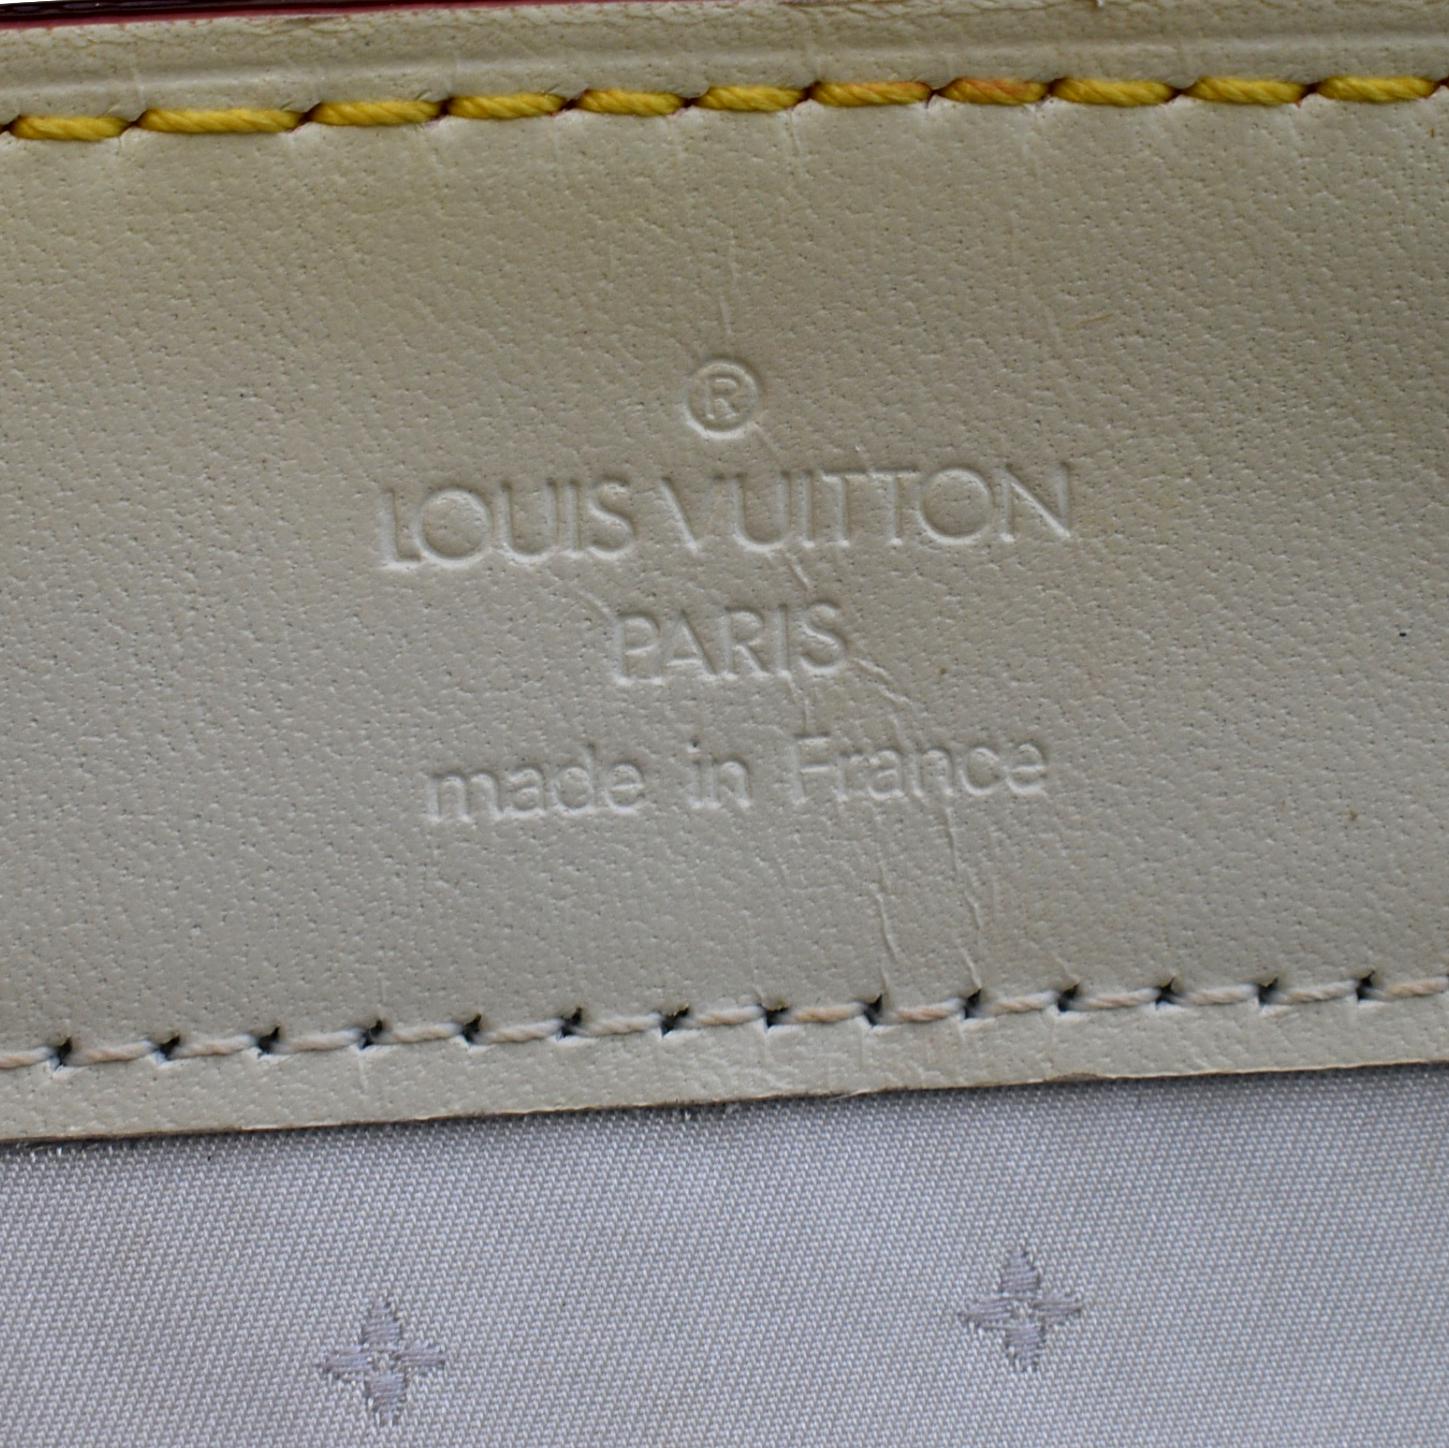 Lot - A Louis Vuitton Le Talentueux shoulder bag